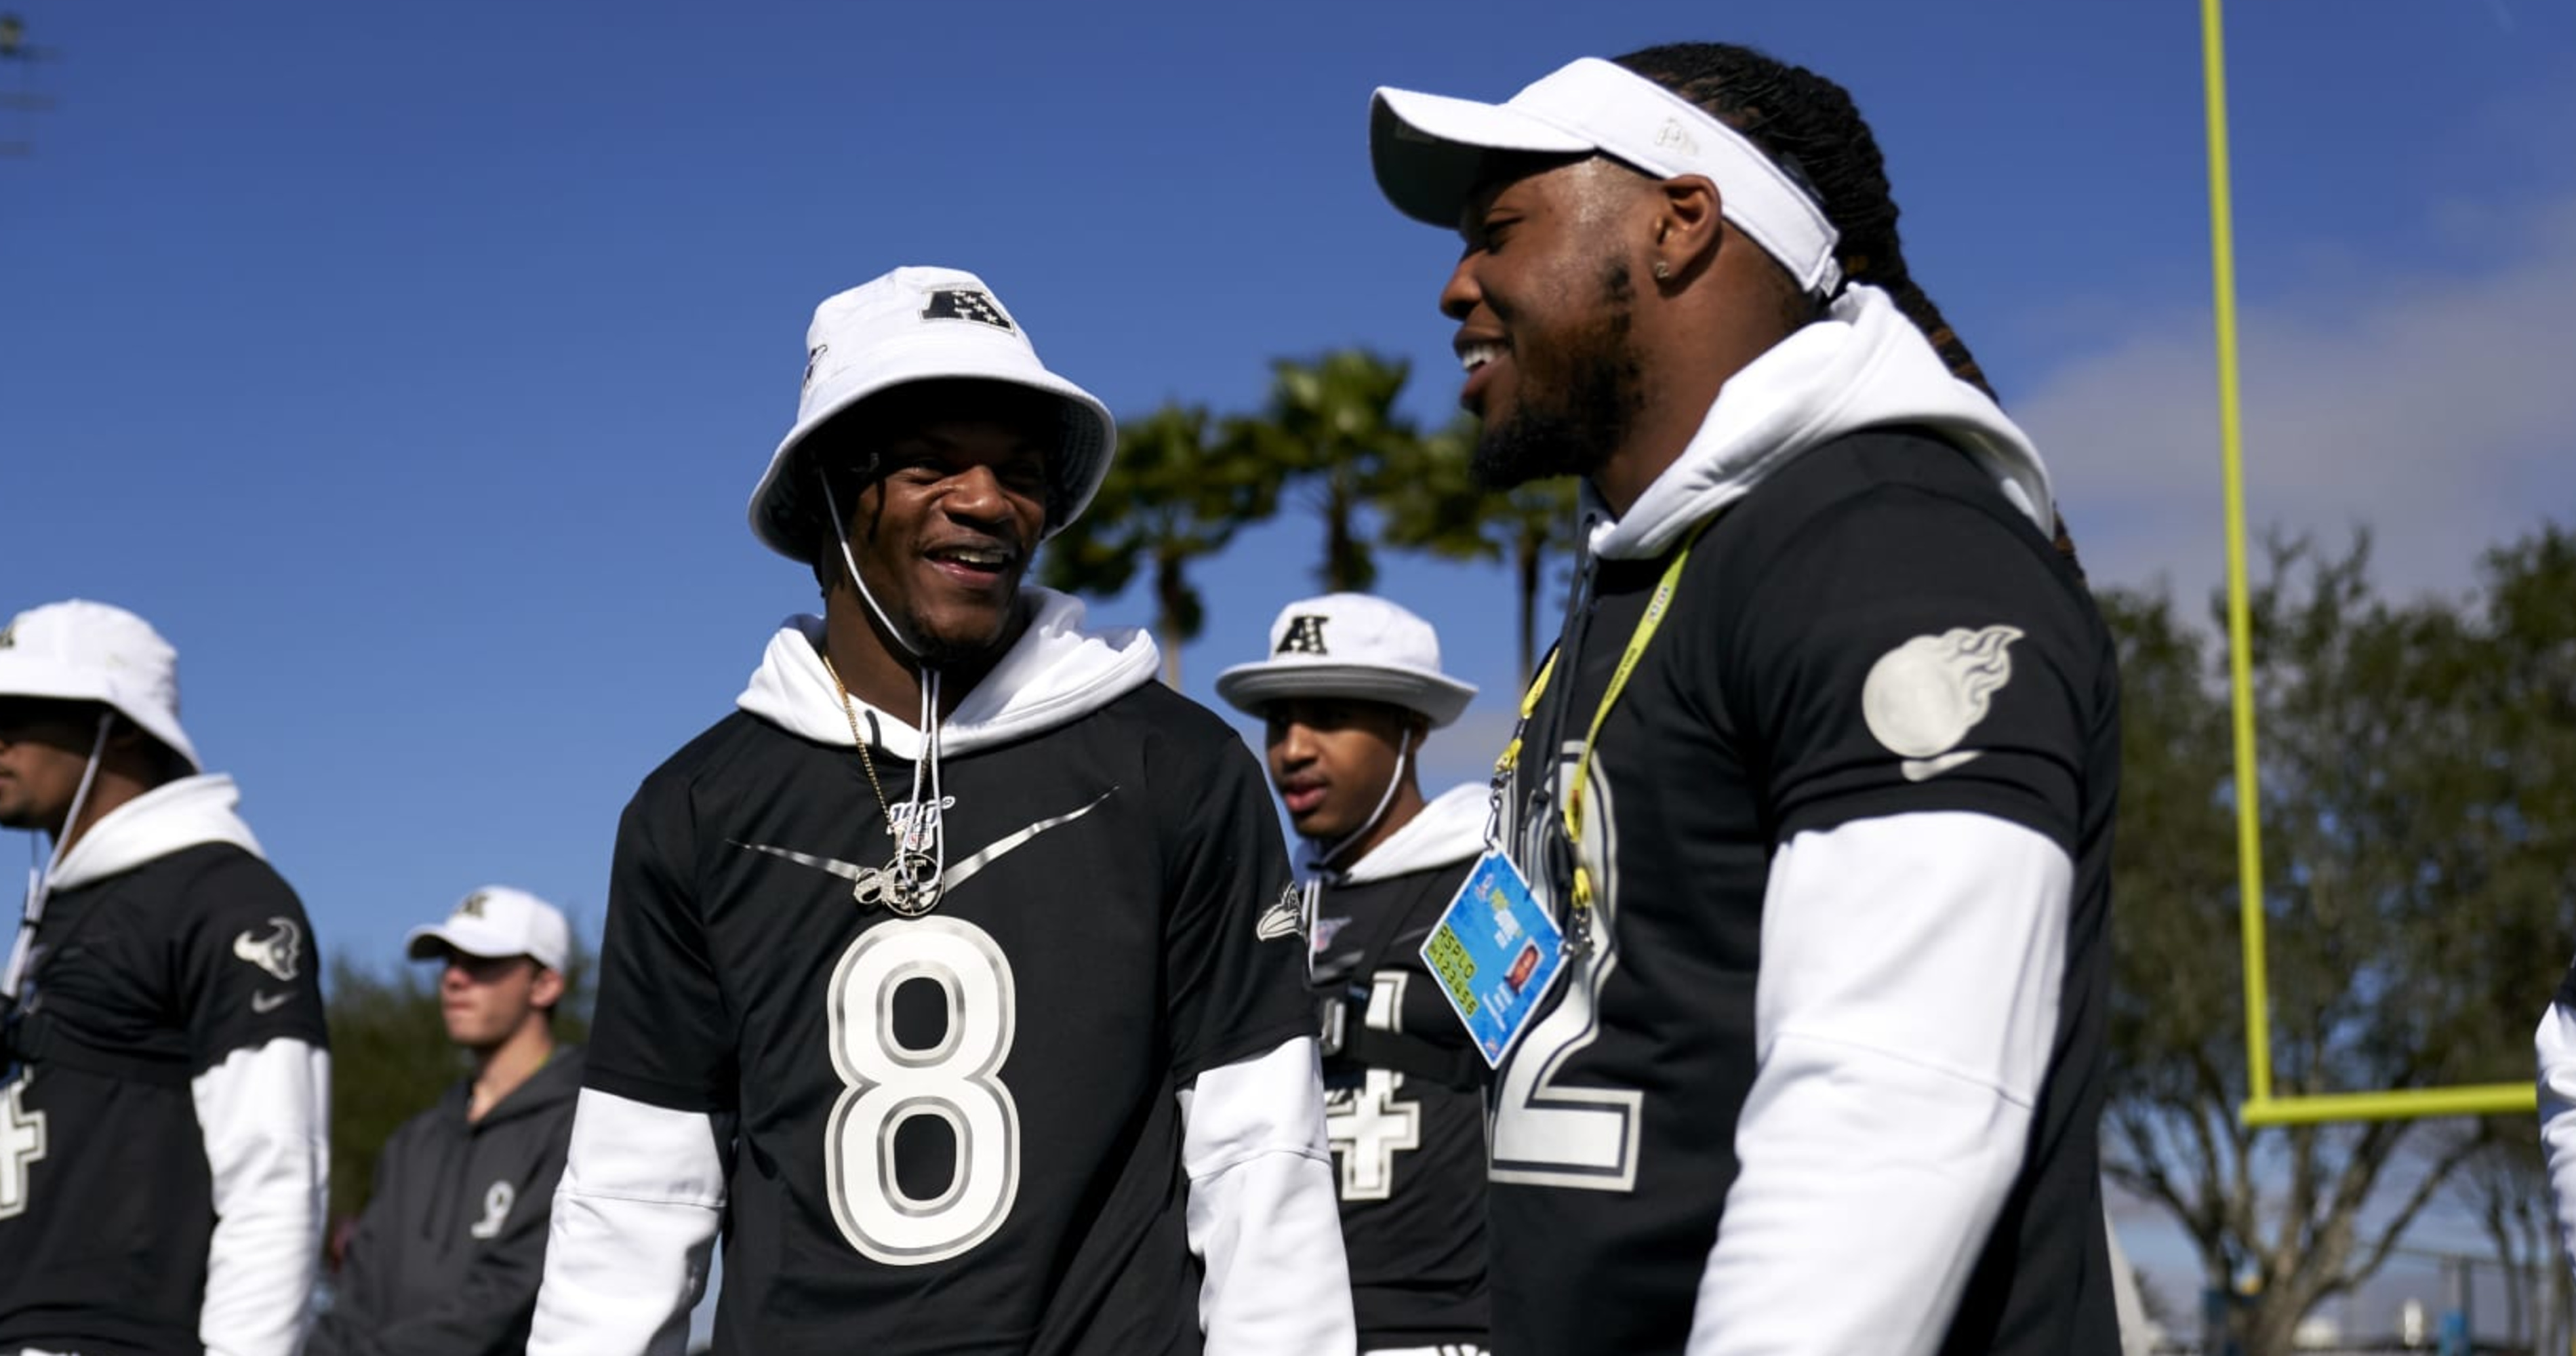 NFL Fans Hype Derrick Henry, Lamar Jackson as 'Dangerous' for Ravens' Super Bowl Push